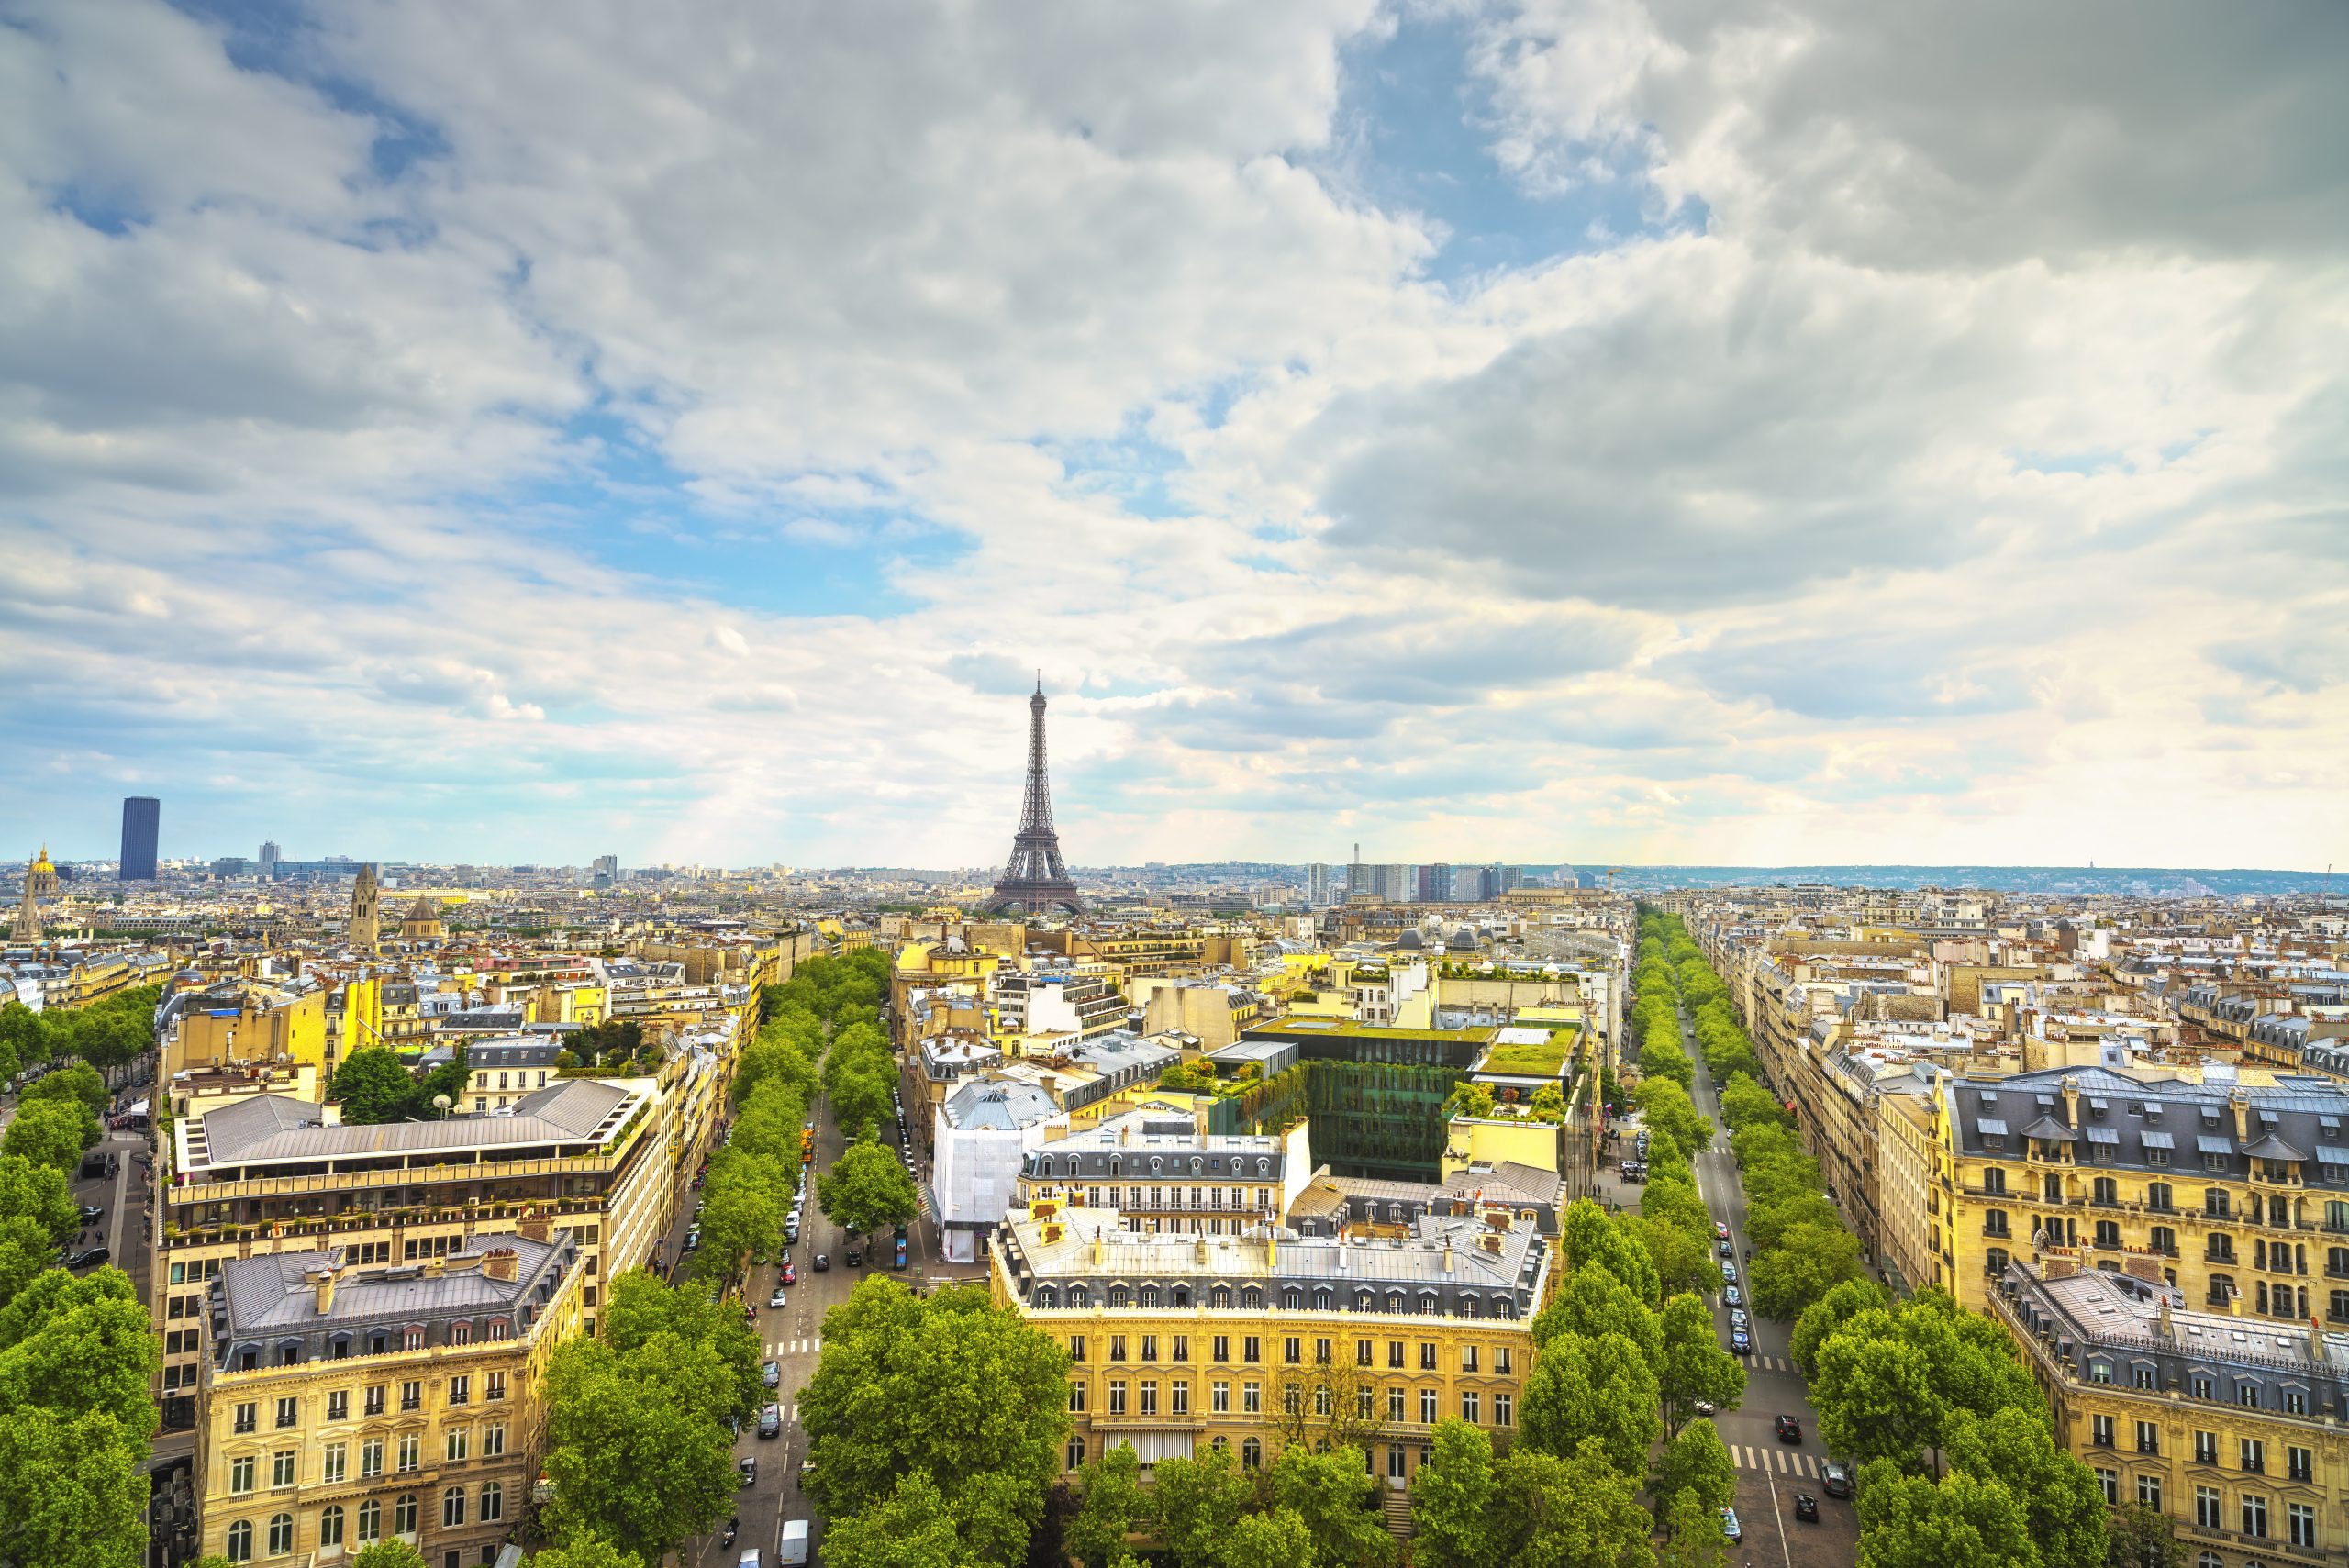 Point de repère de la Tour Eiffel, vue depuis l'Arc de Triomphe. Paysage urbain parisien. France, Europe.
